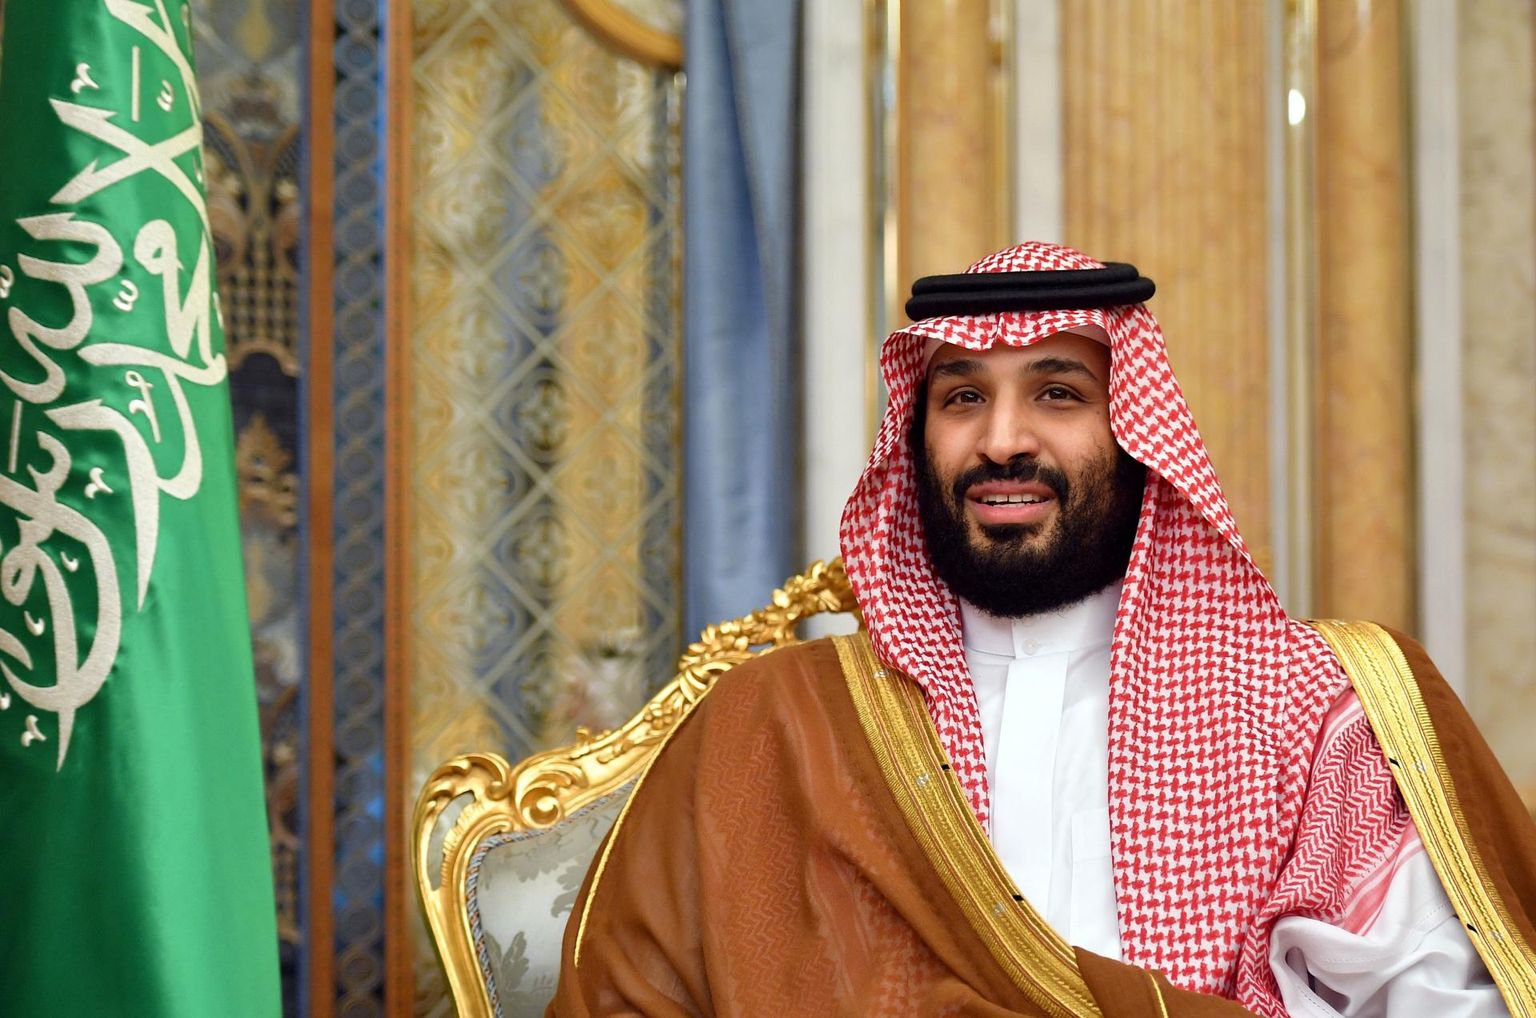 Nädalavahetuse puhastusega kuningakojas kõrvaldas Saudi Araabia kroonprinst Mohammed bin Salman õukonnast viimased kriitikud.